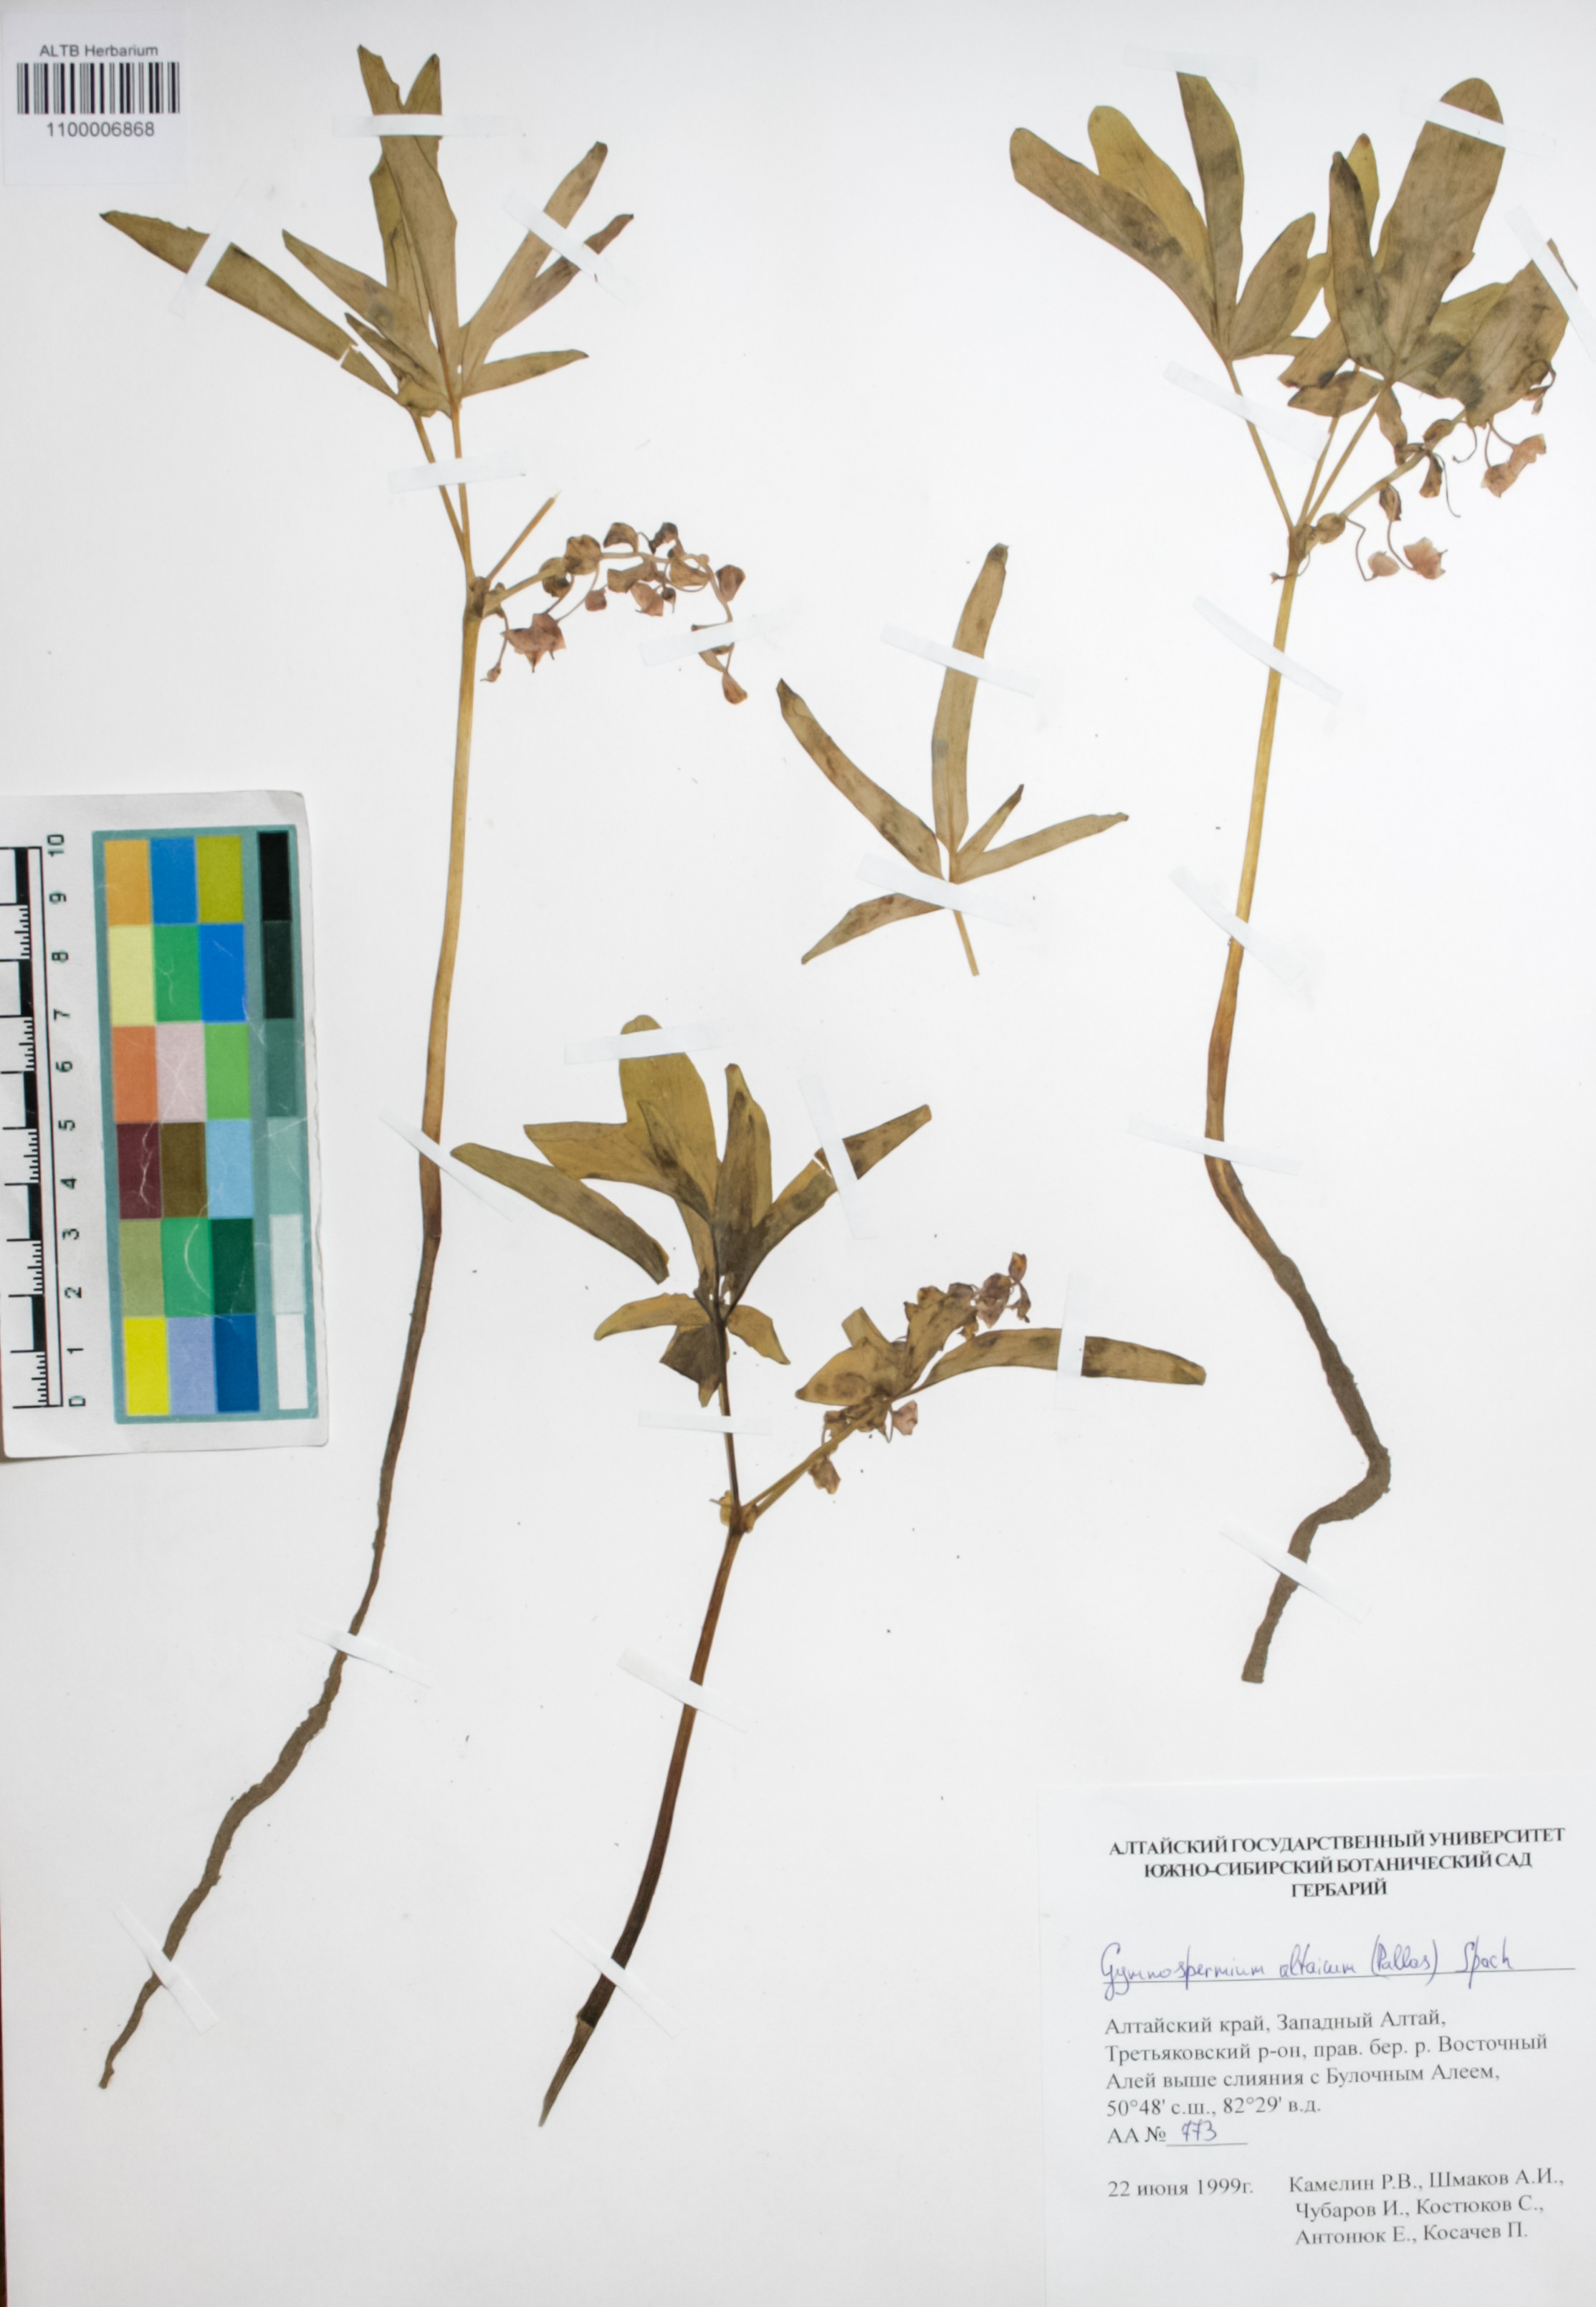 Berberidaceae,Gymnospermium altaicum (Pallas) Sprach.